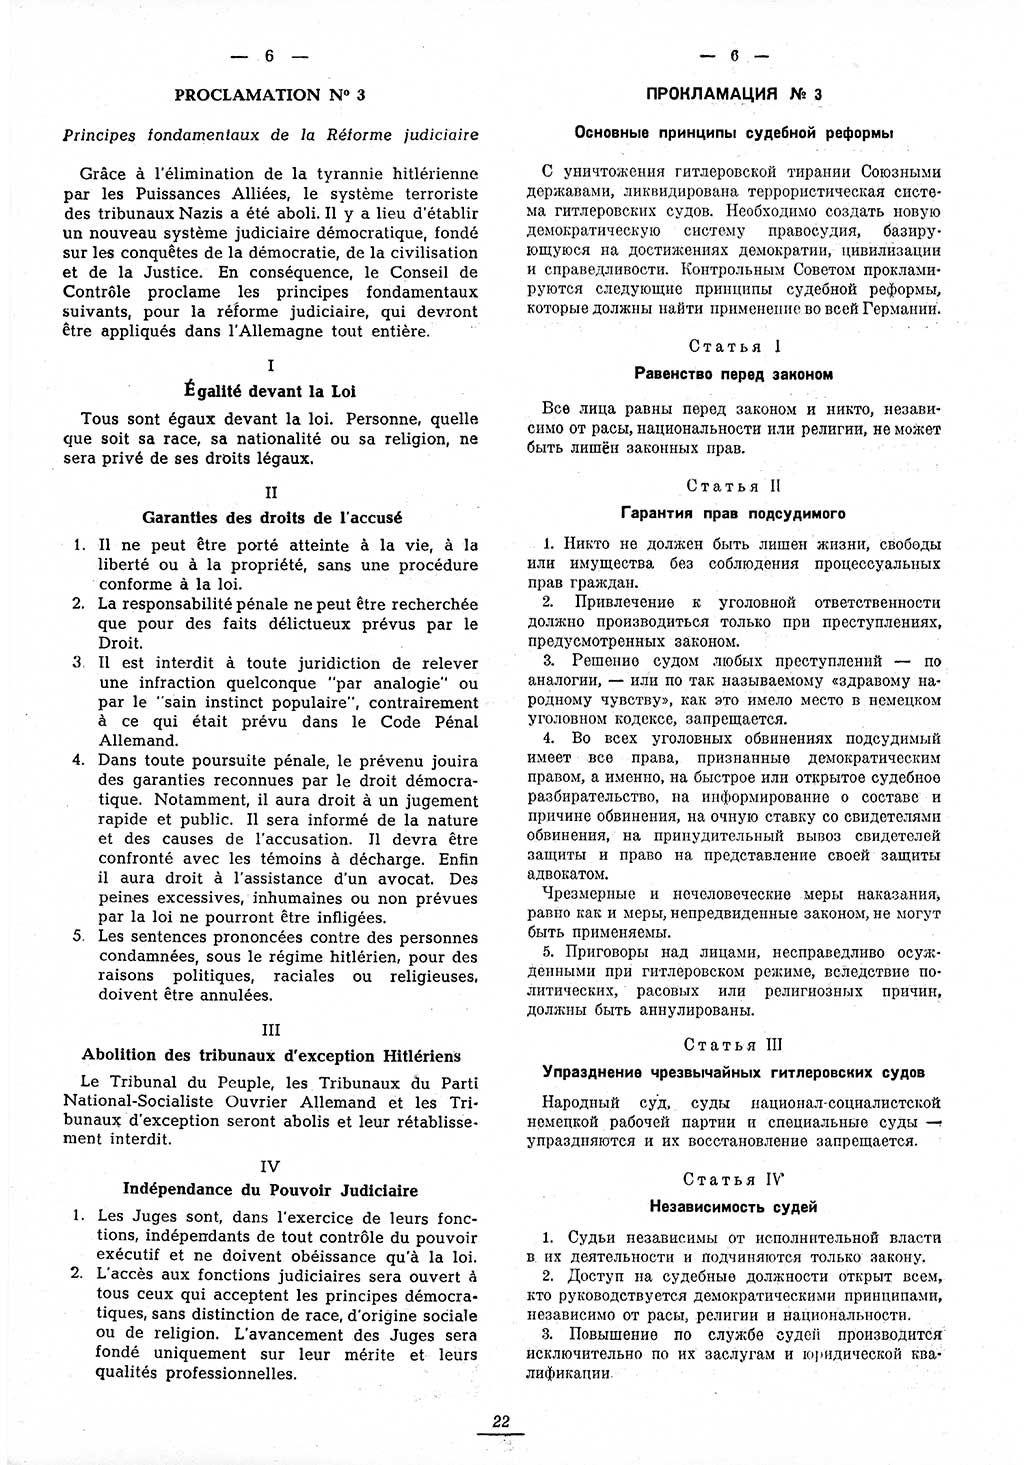 Amtsblatt des Kontrollrats (ABlKR) in Deutschland 1945, Seite 22/1 (ABlKR Dtl. 1945, S. 22/1)